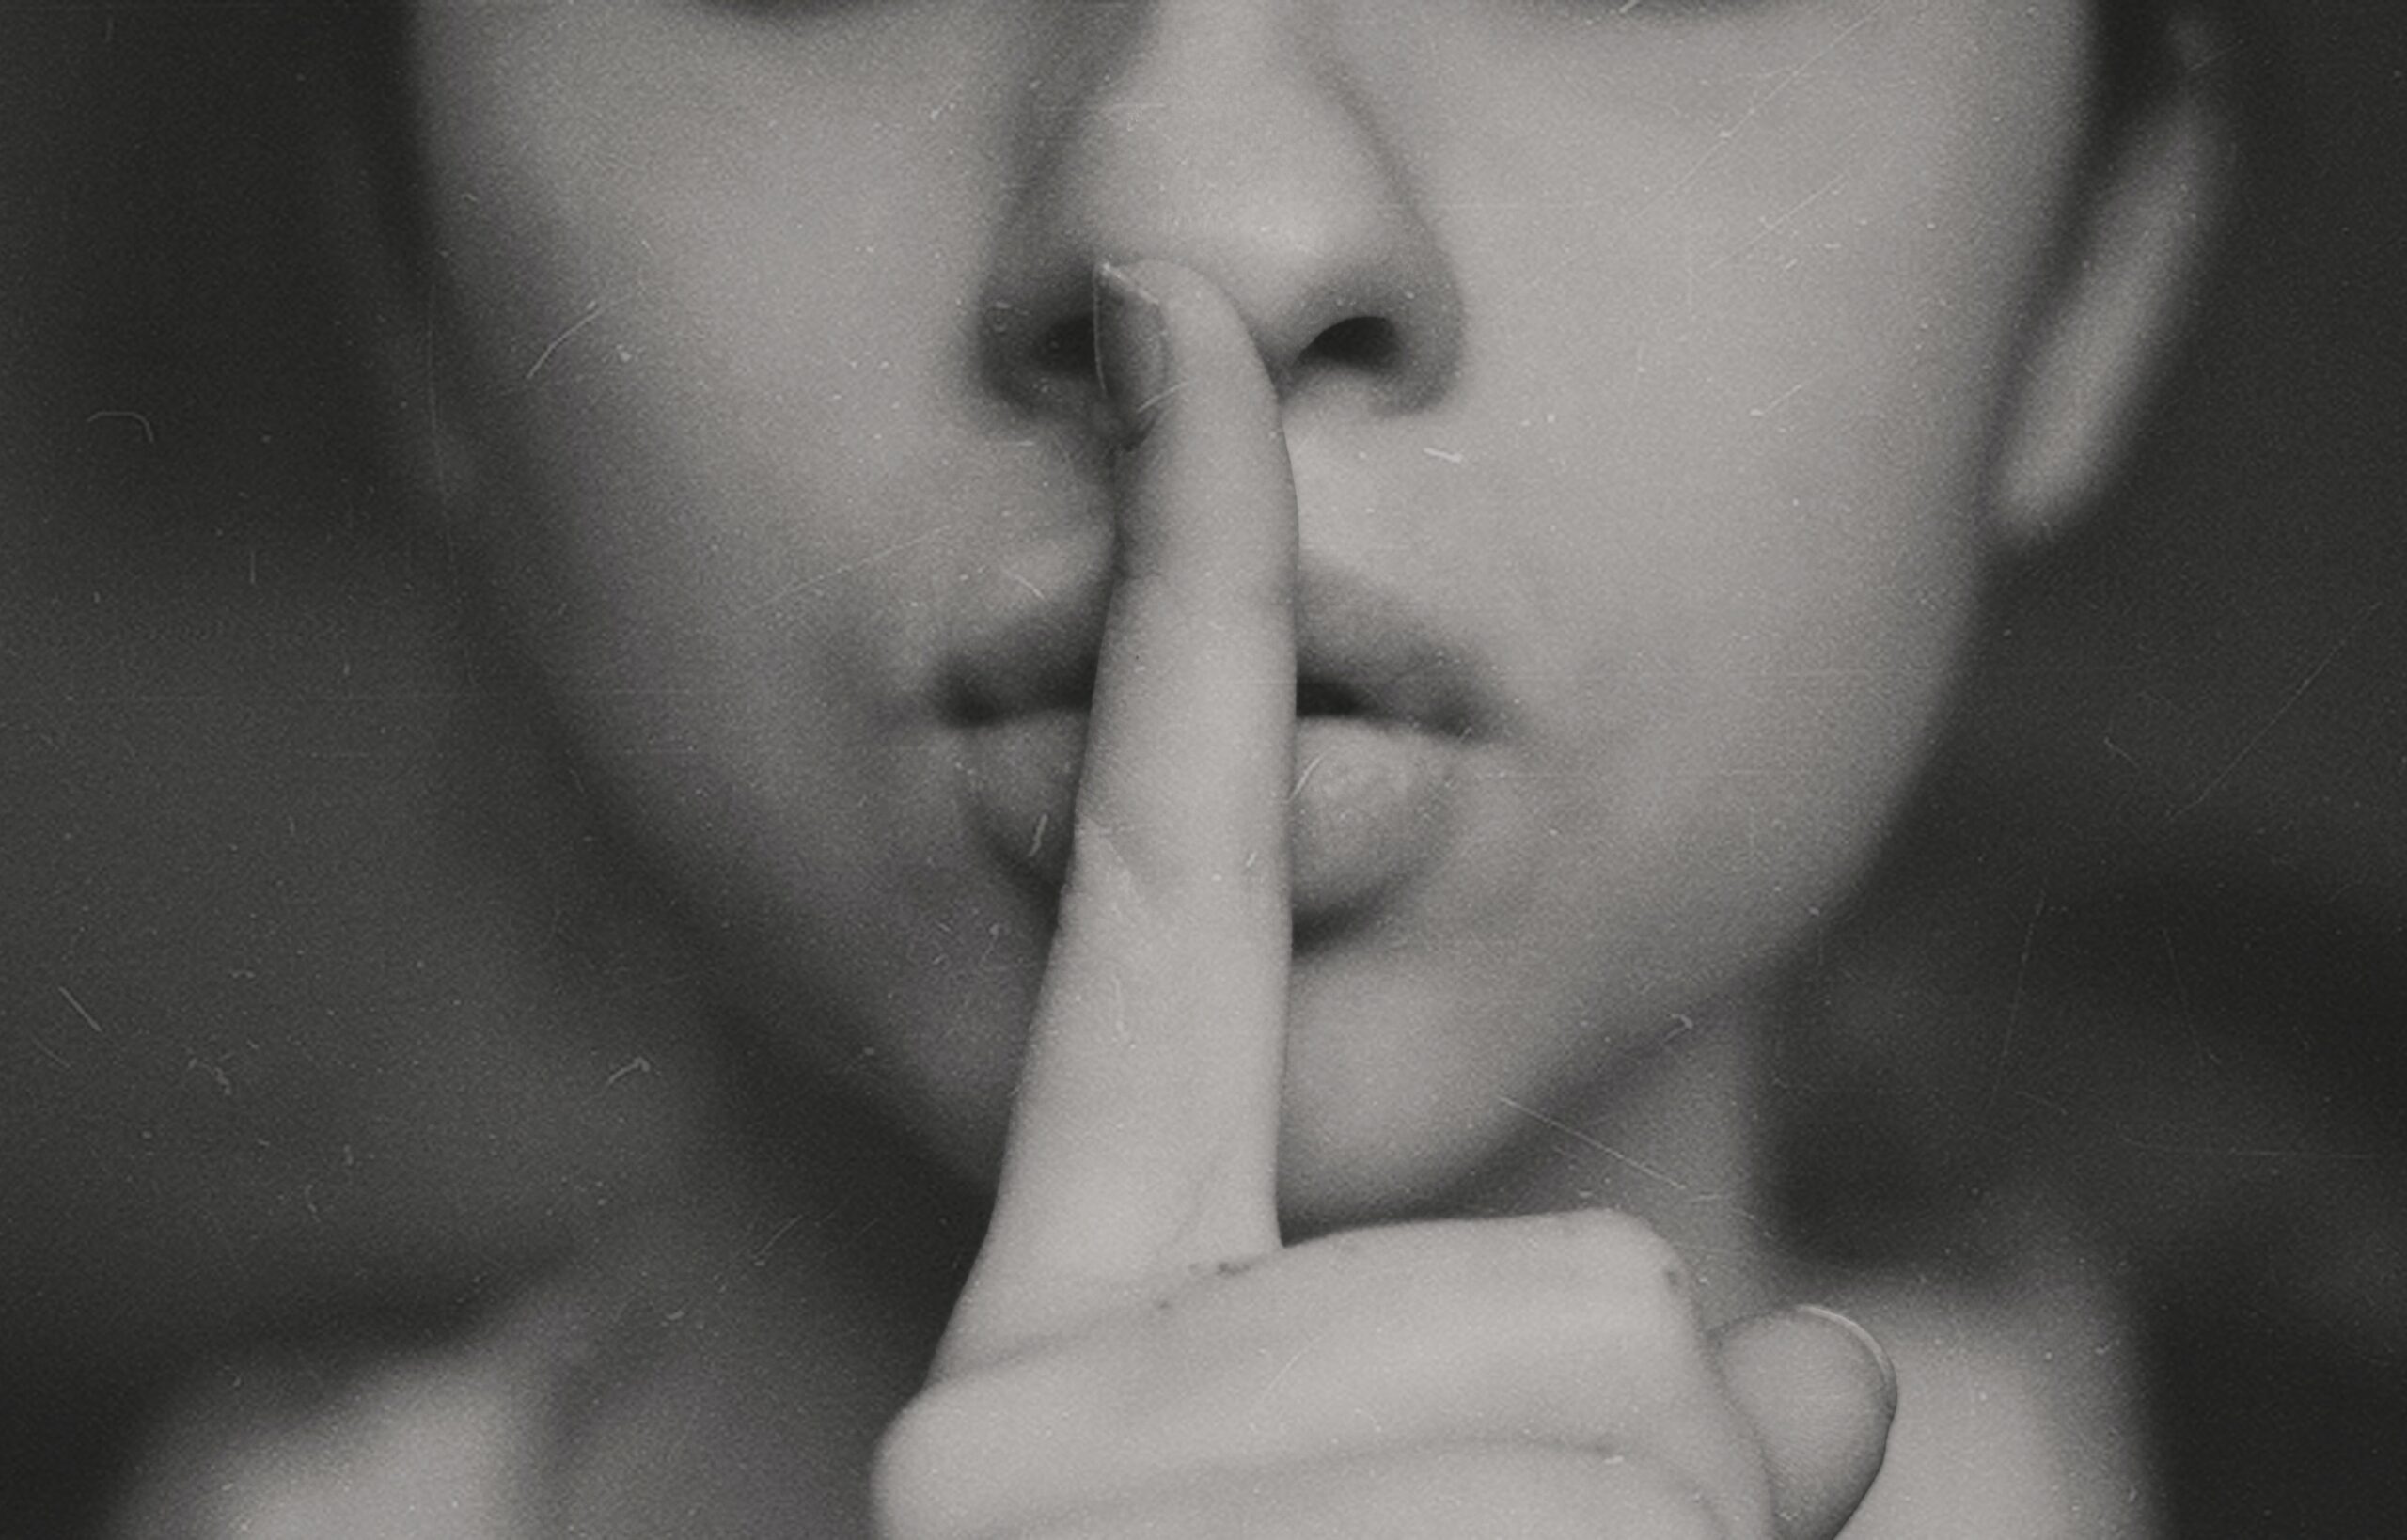 secret shh finger on mouth